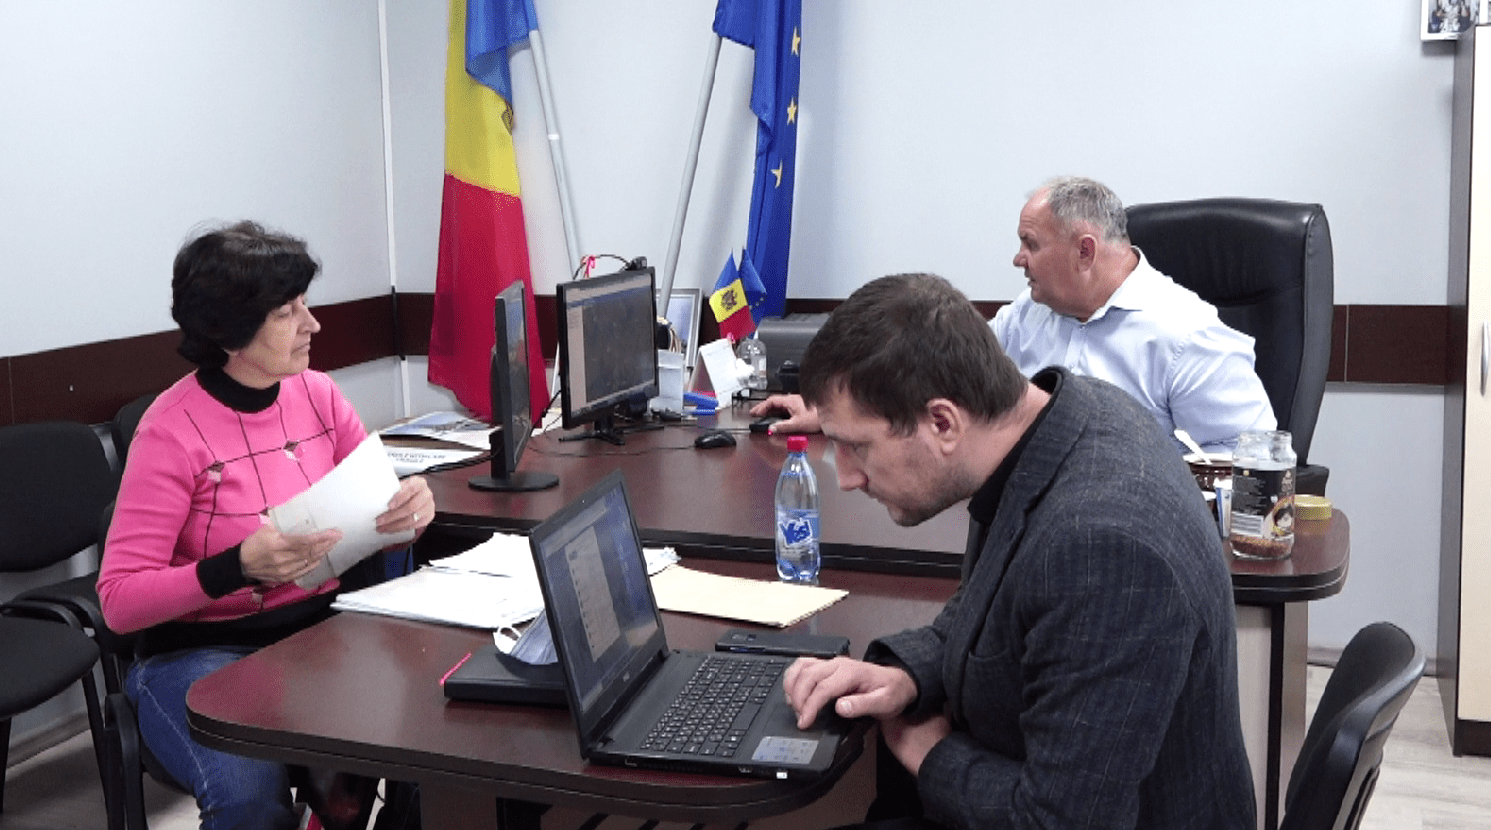 /VIDEO/ Asistență juridică gratuită pentru locuitorii din satul Sofia, raionul Drochia. Cu ce probleme se confruntă localnicii